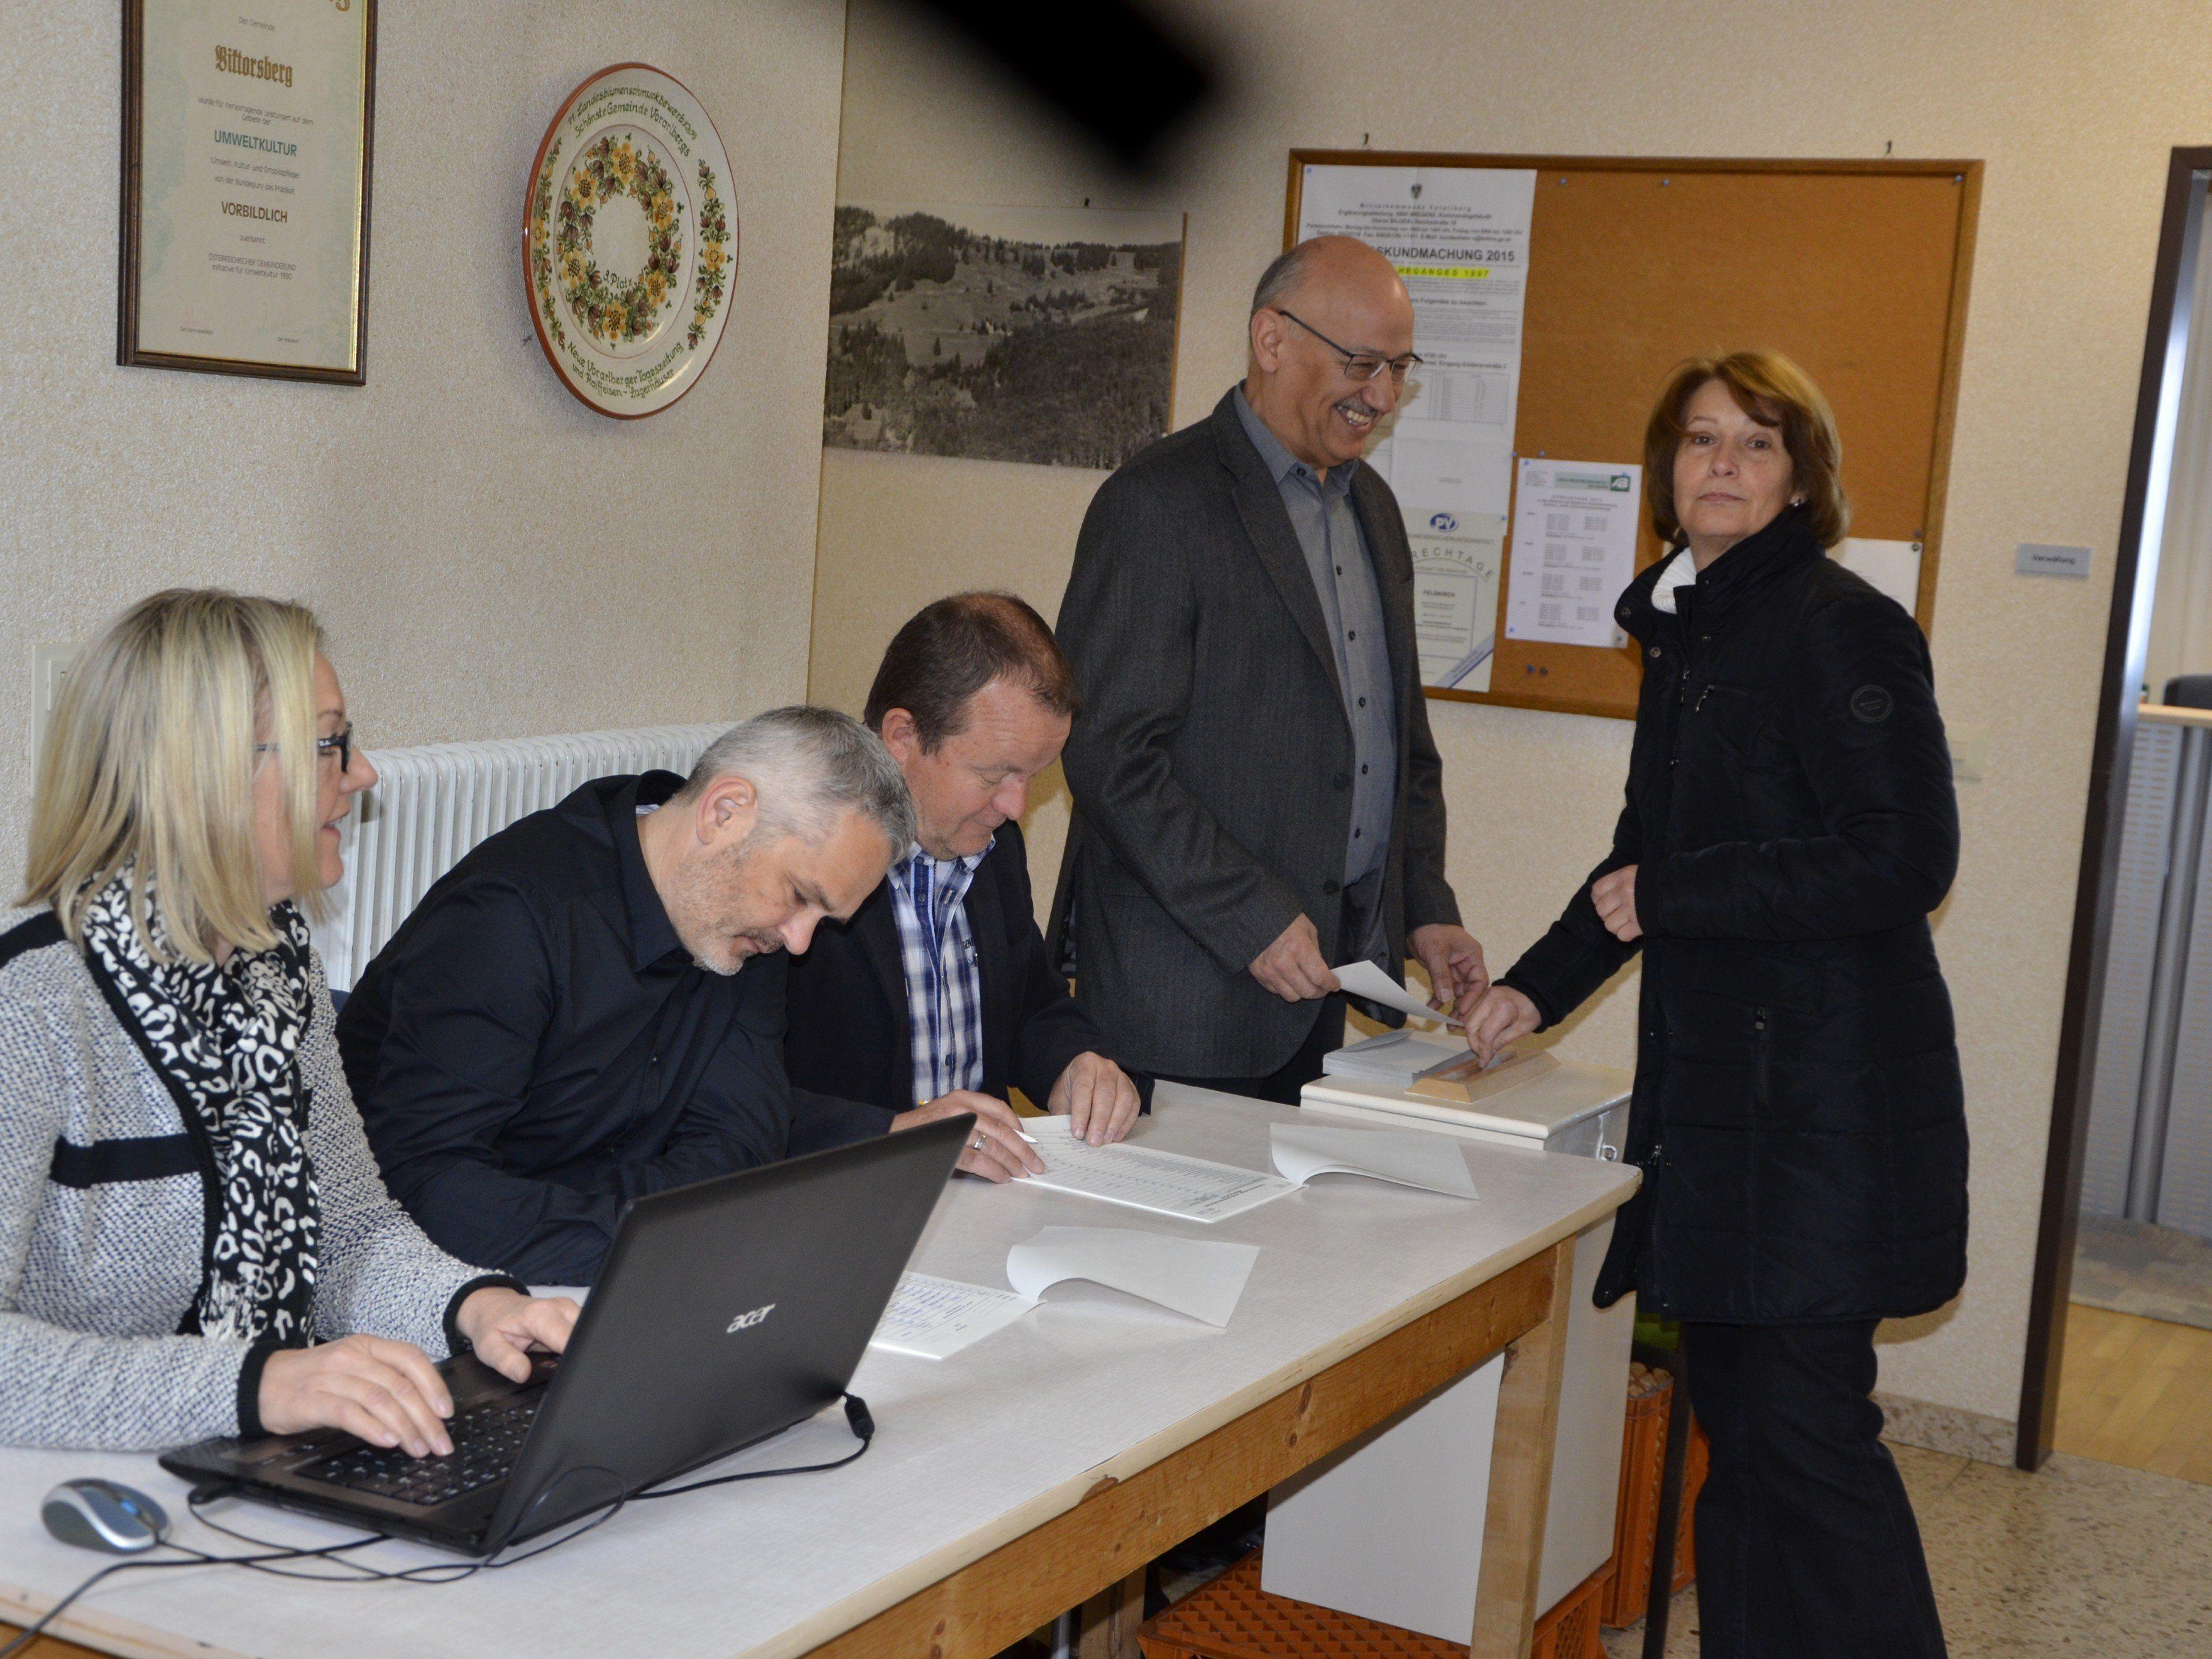 Einiges zu tun hatte die Wahlkommission in der Berggemeinde Viktorsberg